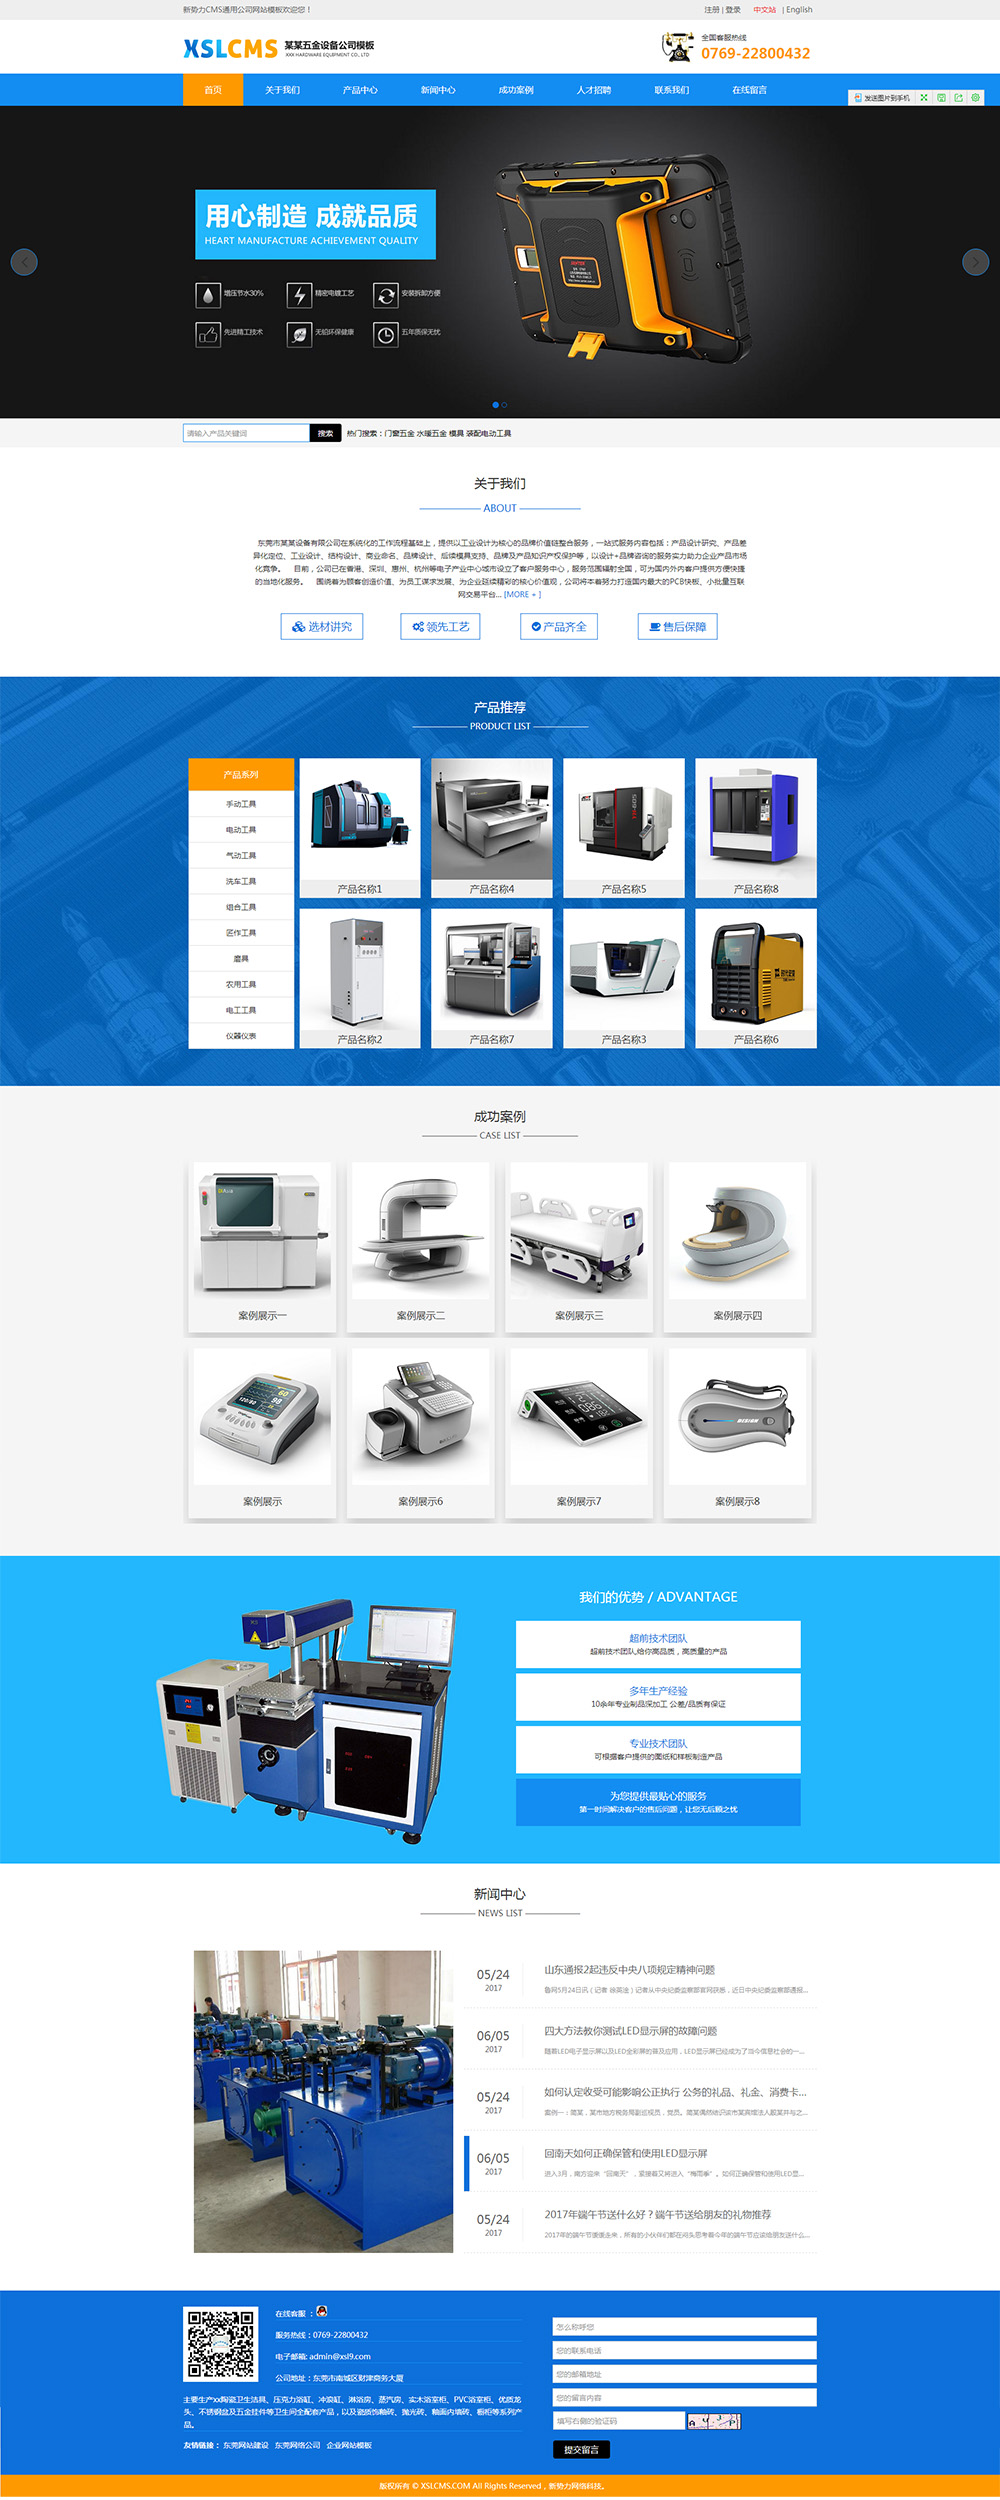 蓝色五金设备自适应网站模板,蓝色机械工业响应式网站模板,企外贸业网站模板,公司网站模板